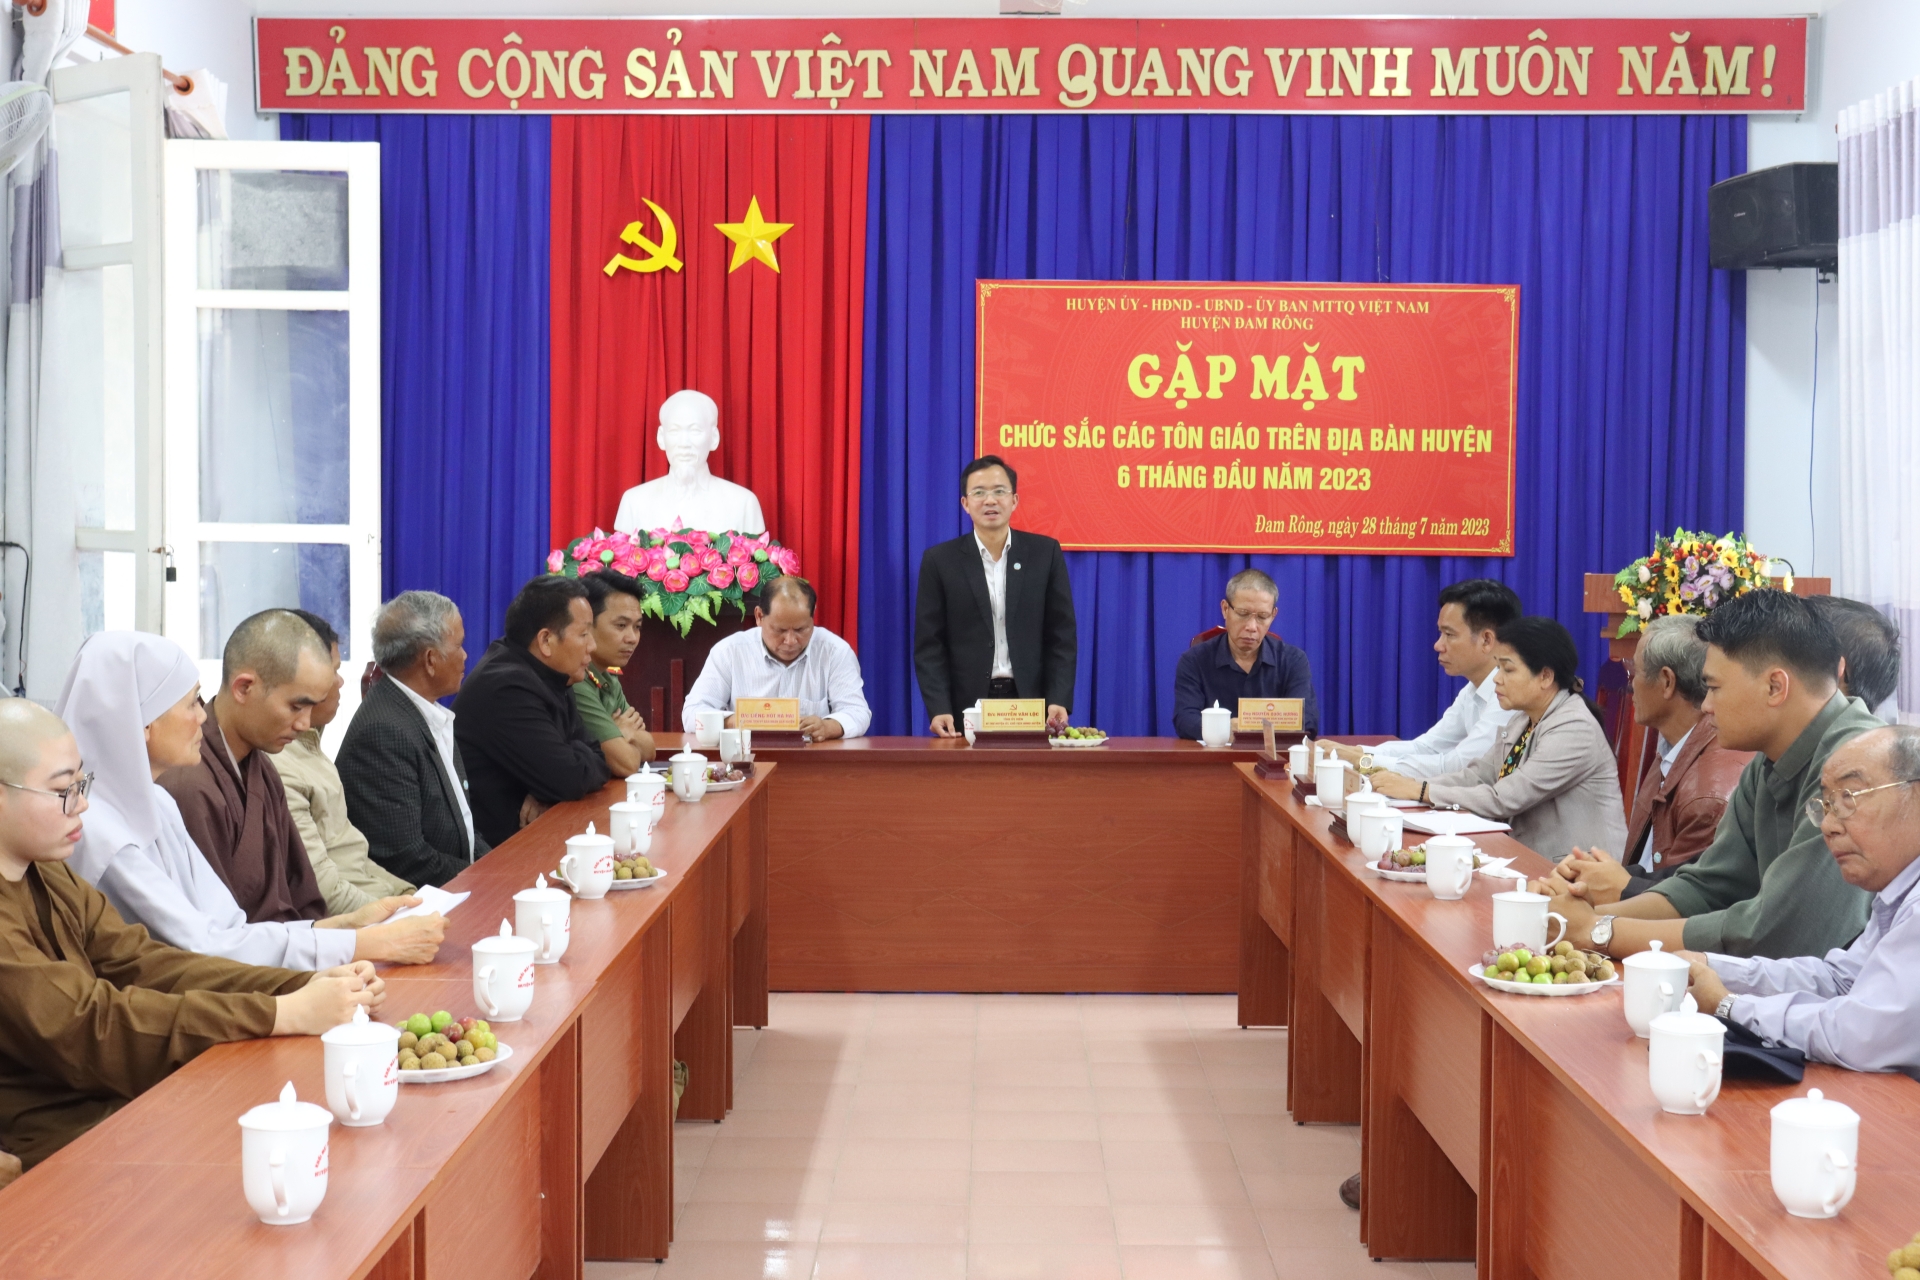 Huyện Đam Rông tổ chức gặp mặt chức sắc tôn giáo